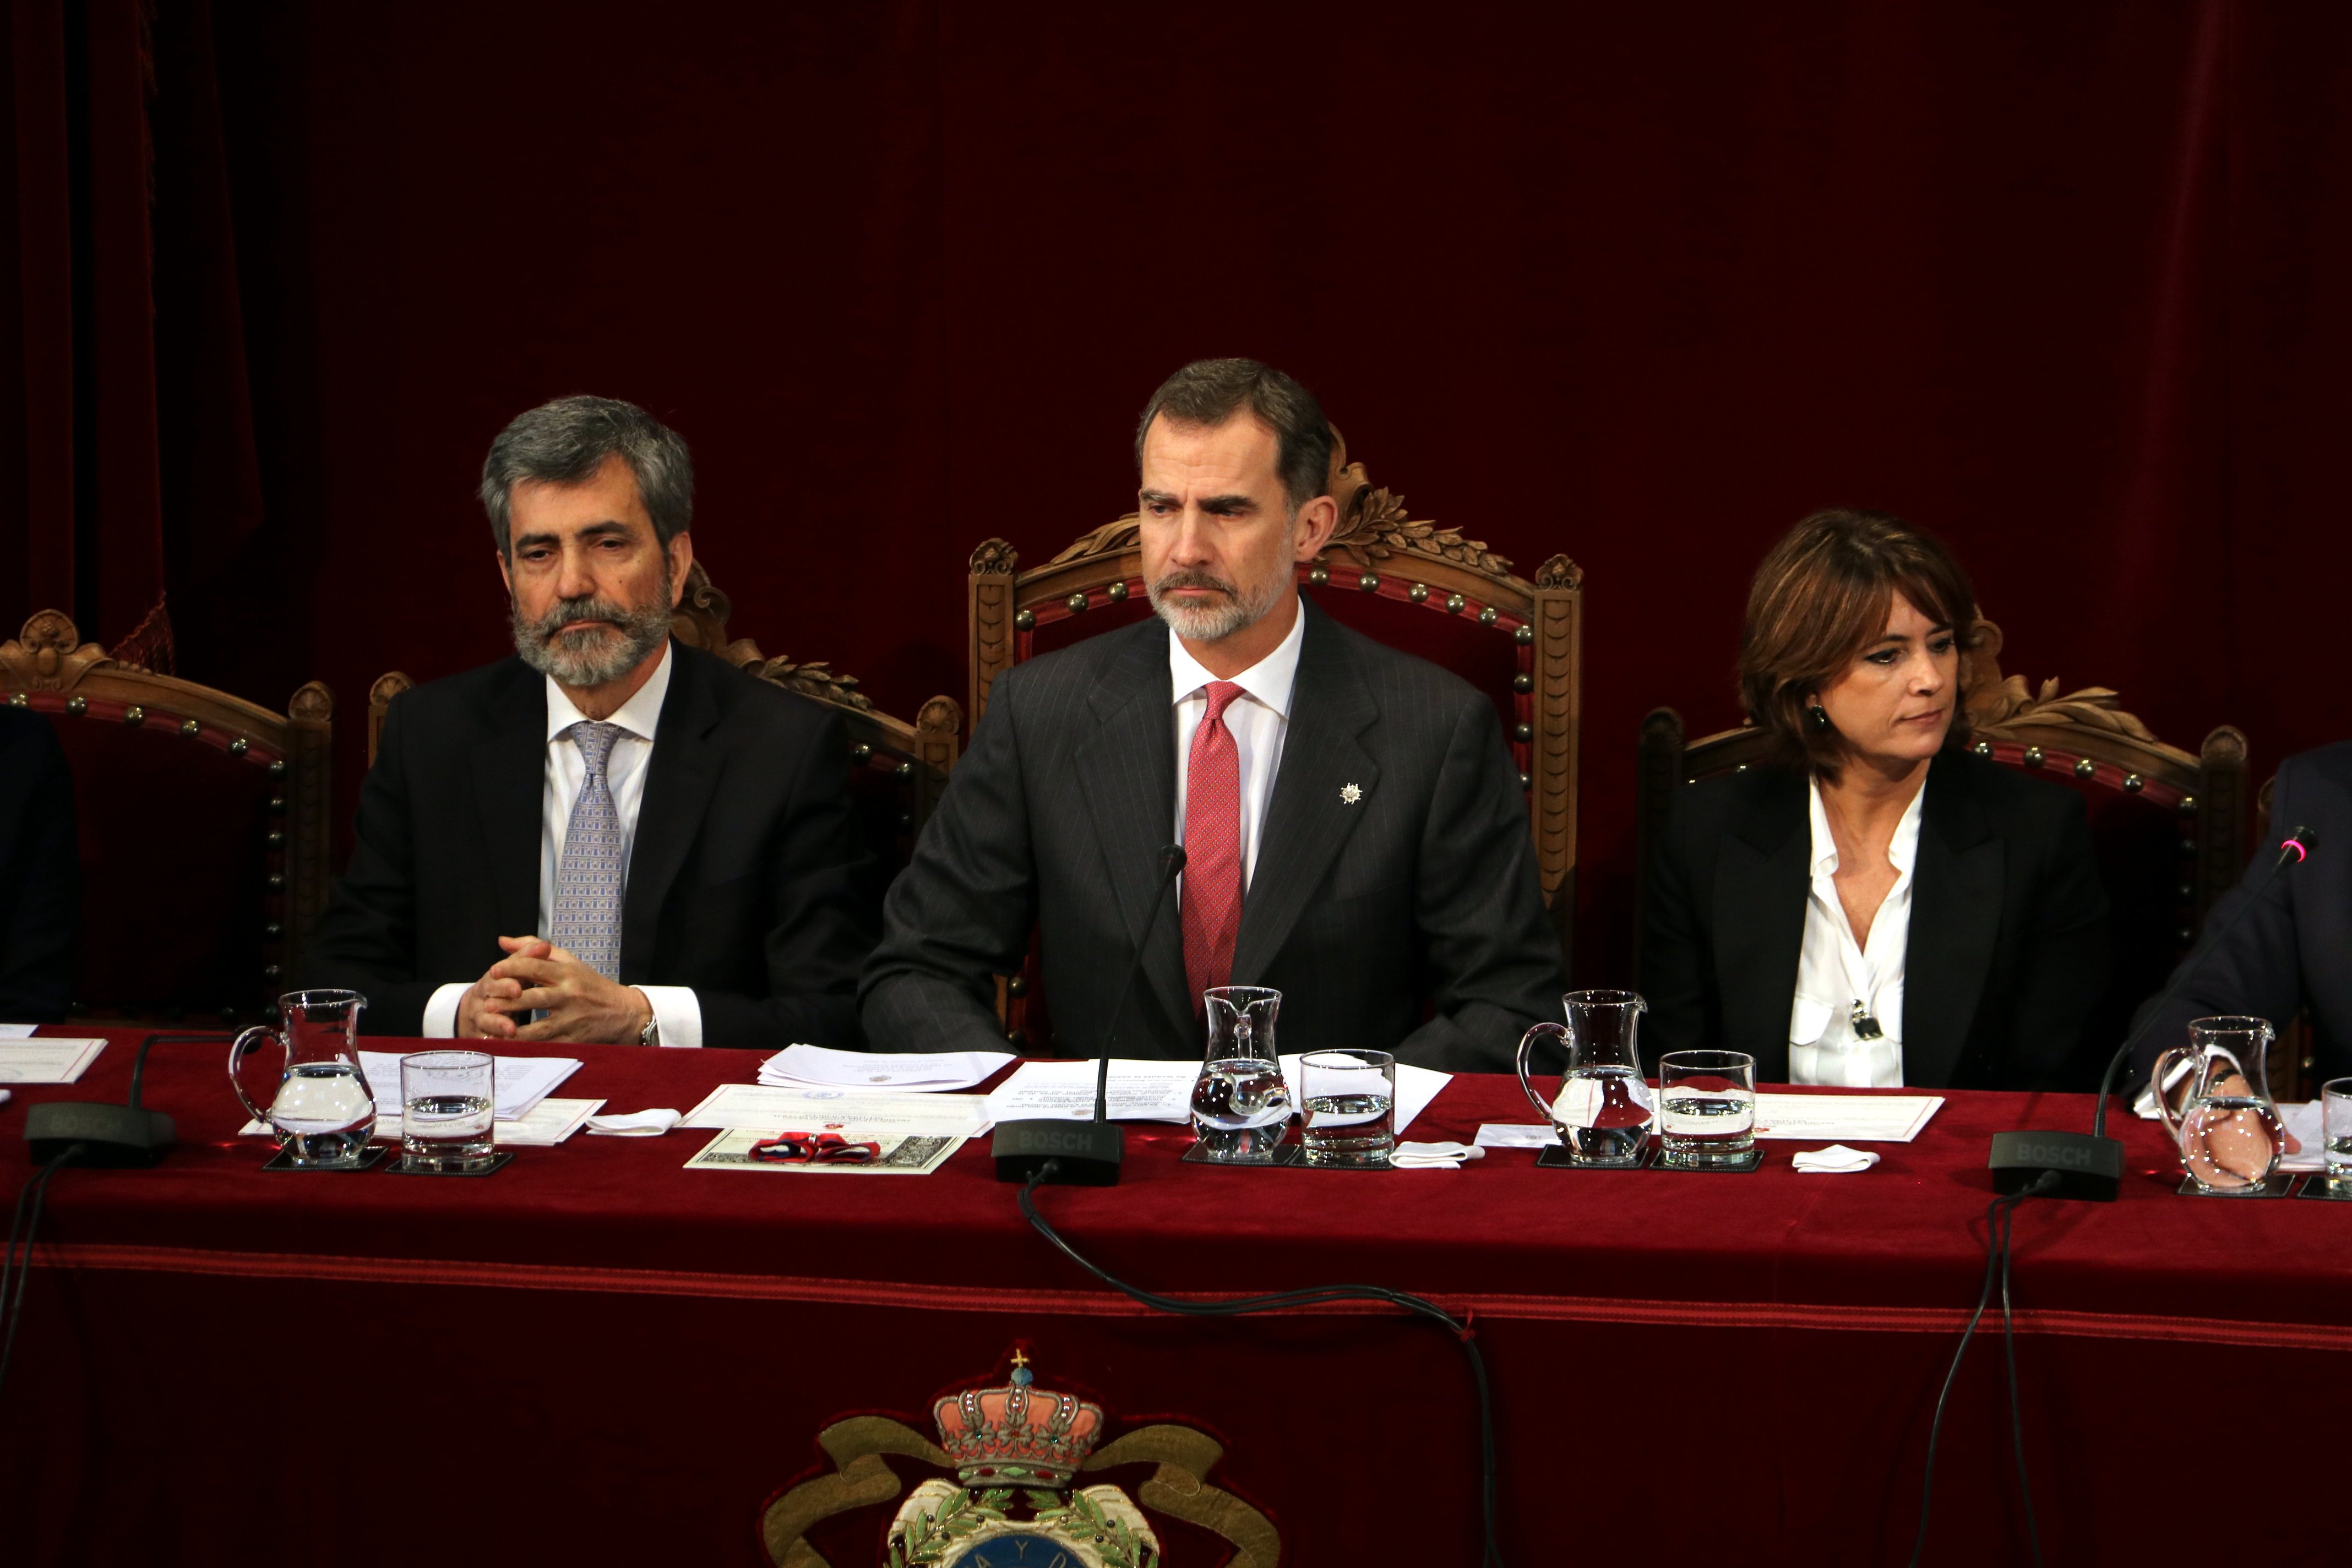 El ministre de Justícia justifica l'absència del Rei a Barcelona amb els jutges